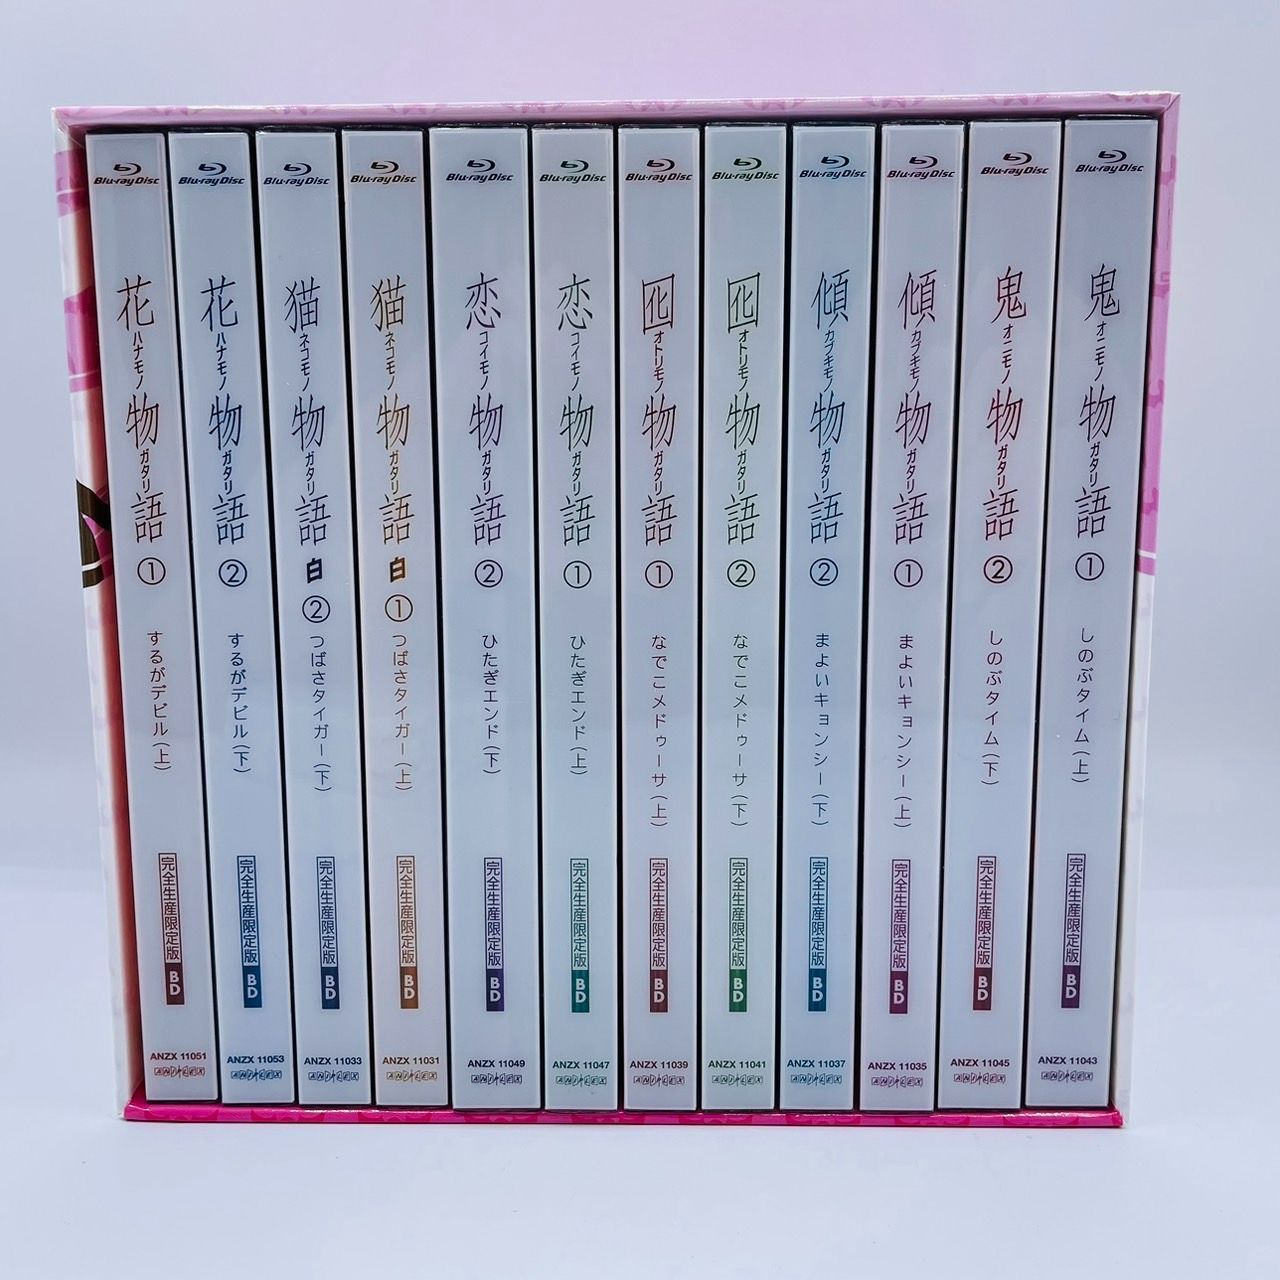 物語シリーズ セカンドシーズン BD Blu-ray 全12巻 まとめ セット 